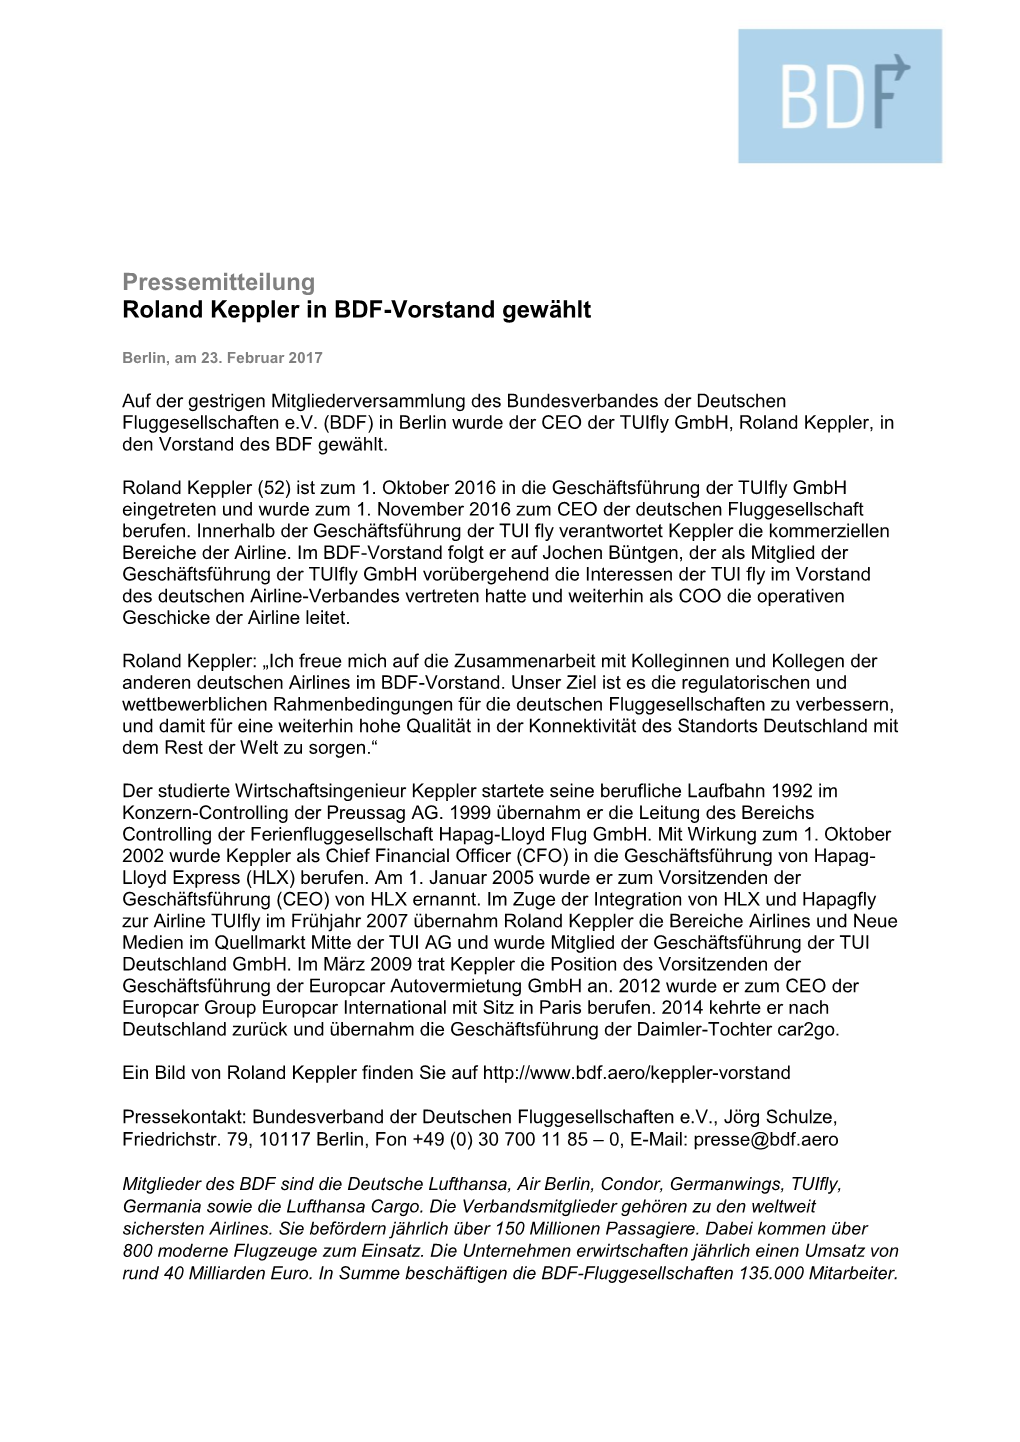 Pressemitteilung Roland Keppler in BDF-Vorstand Gewählt